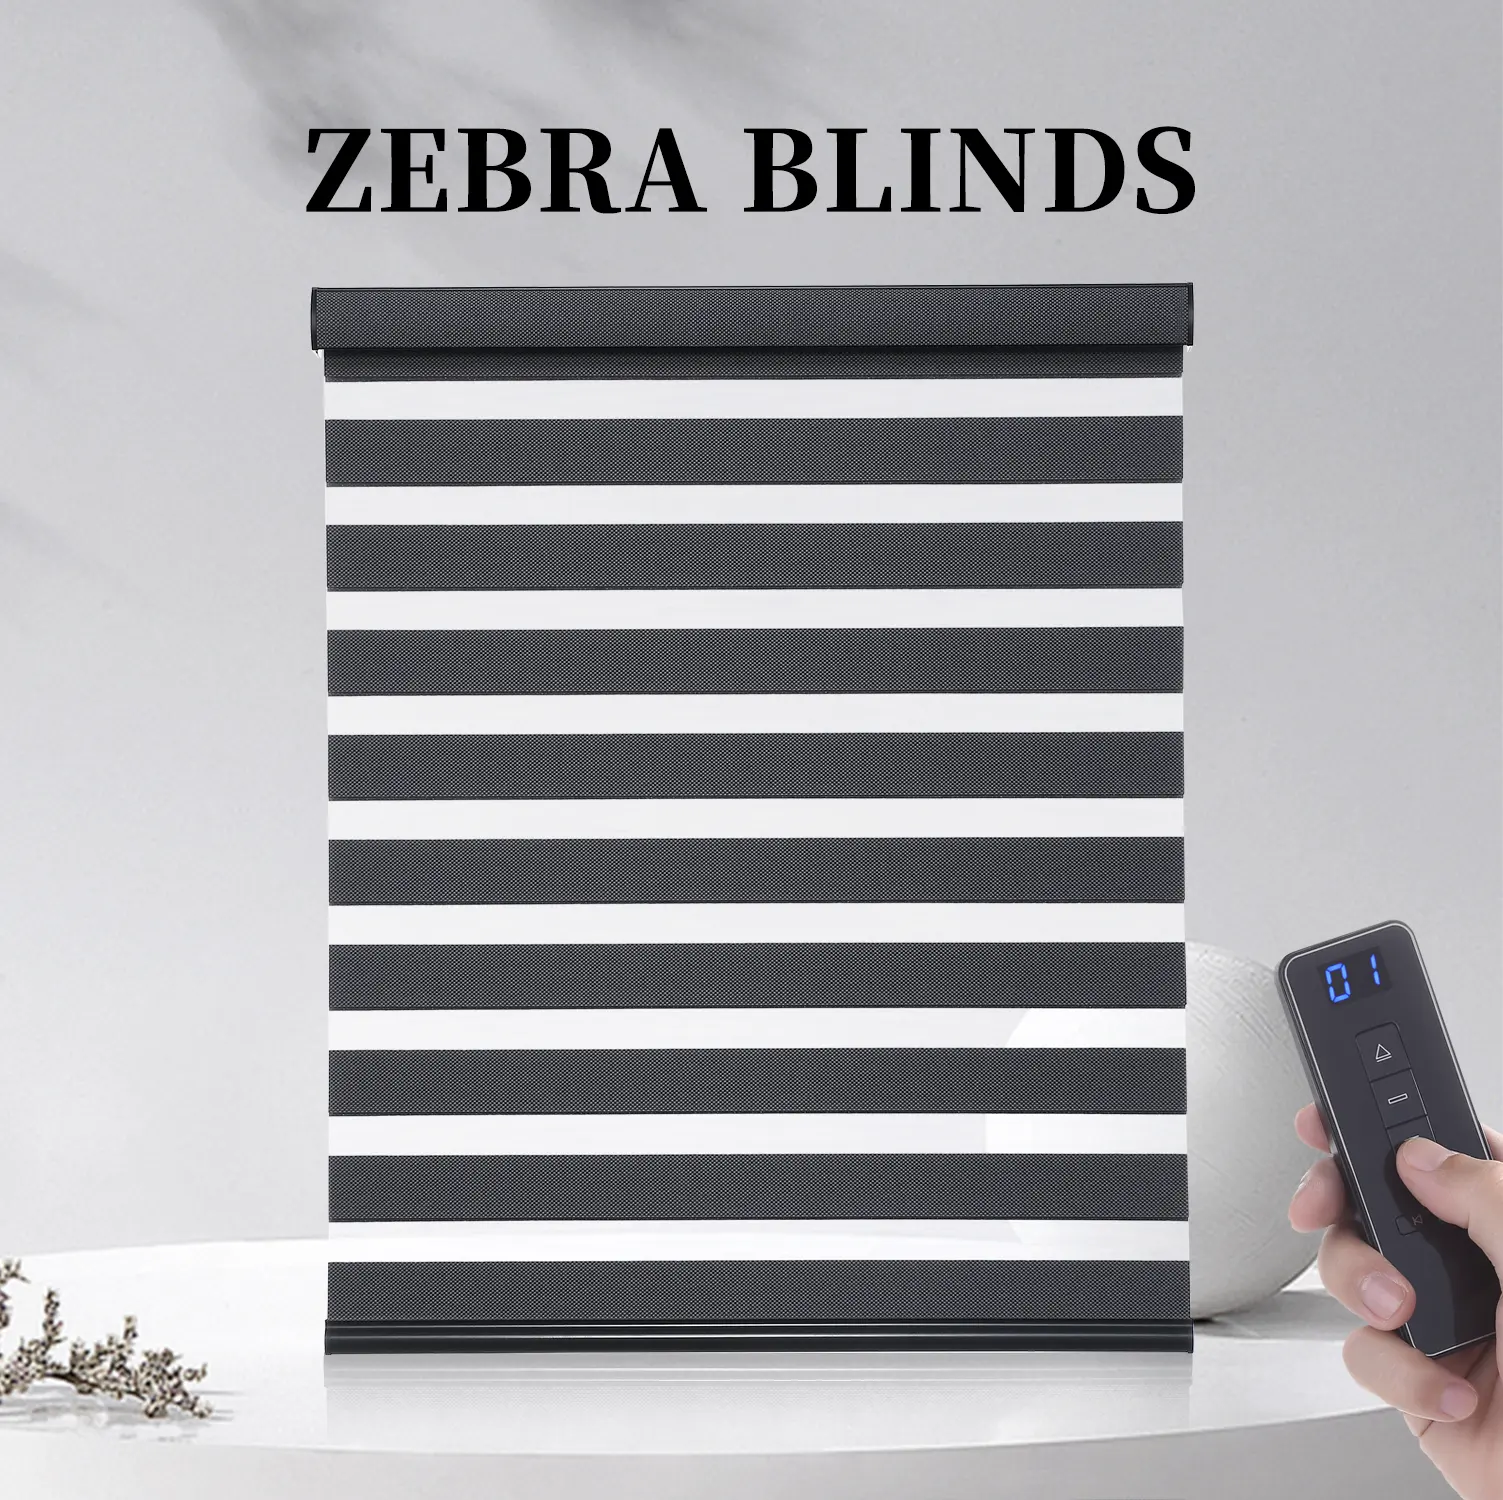 Stock Available Window Blackout Manual Customized Size Zebra Blinds Shade Window Motorized Double Blinds